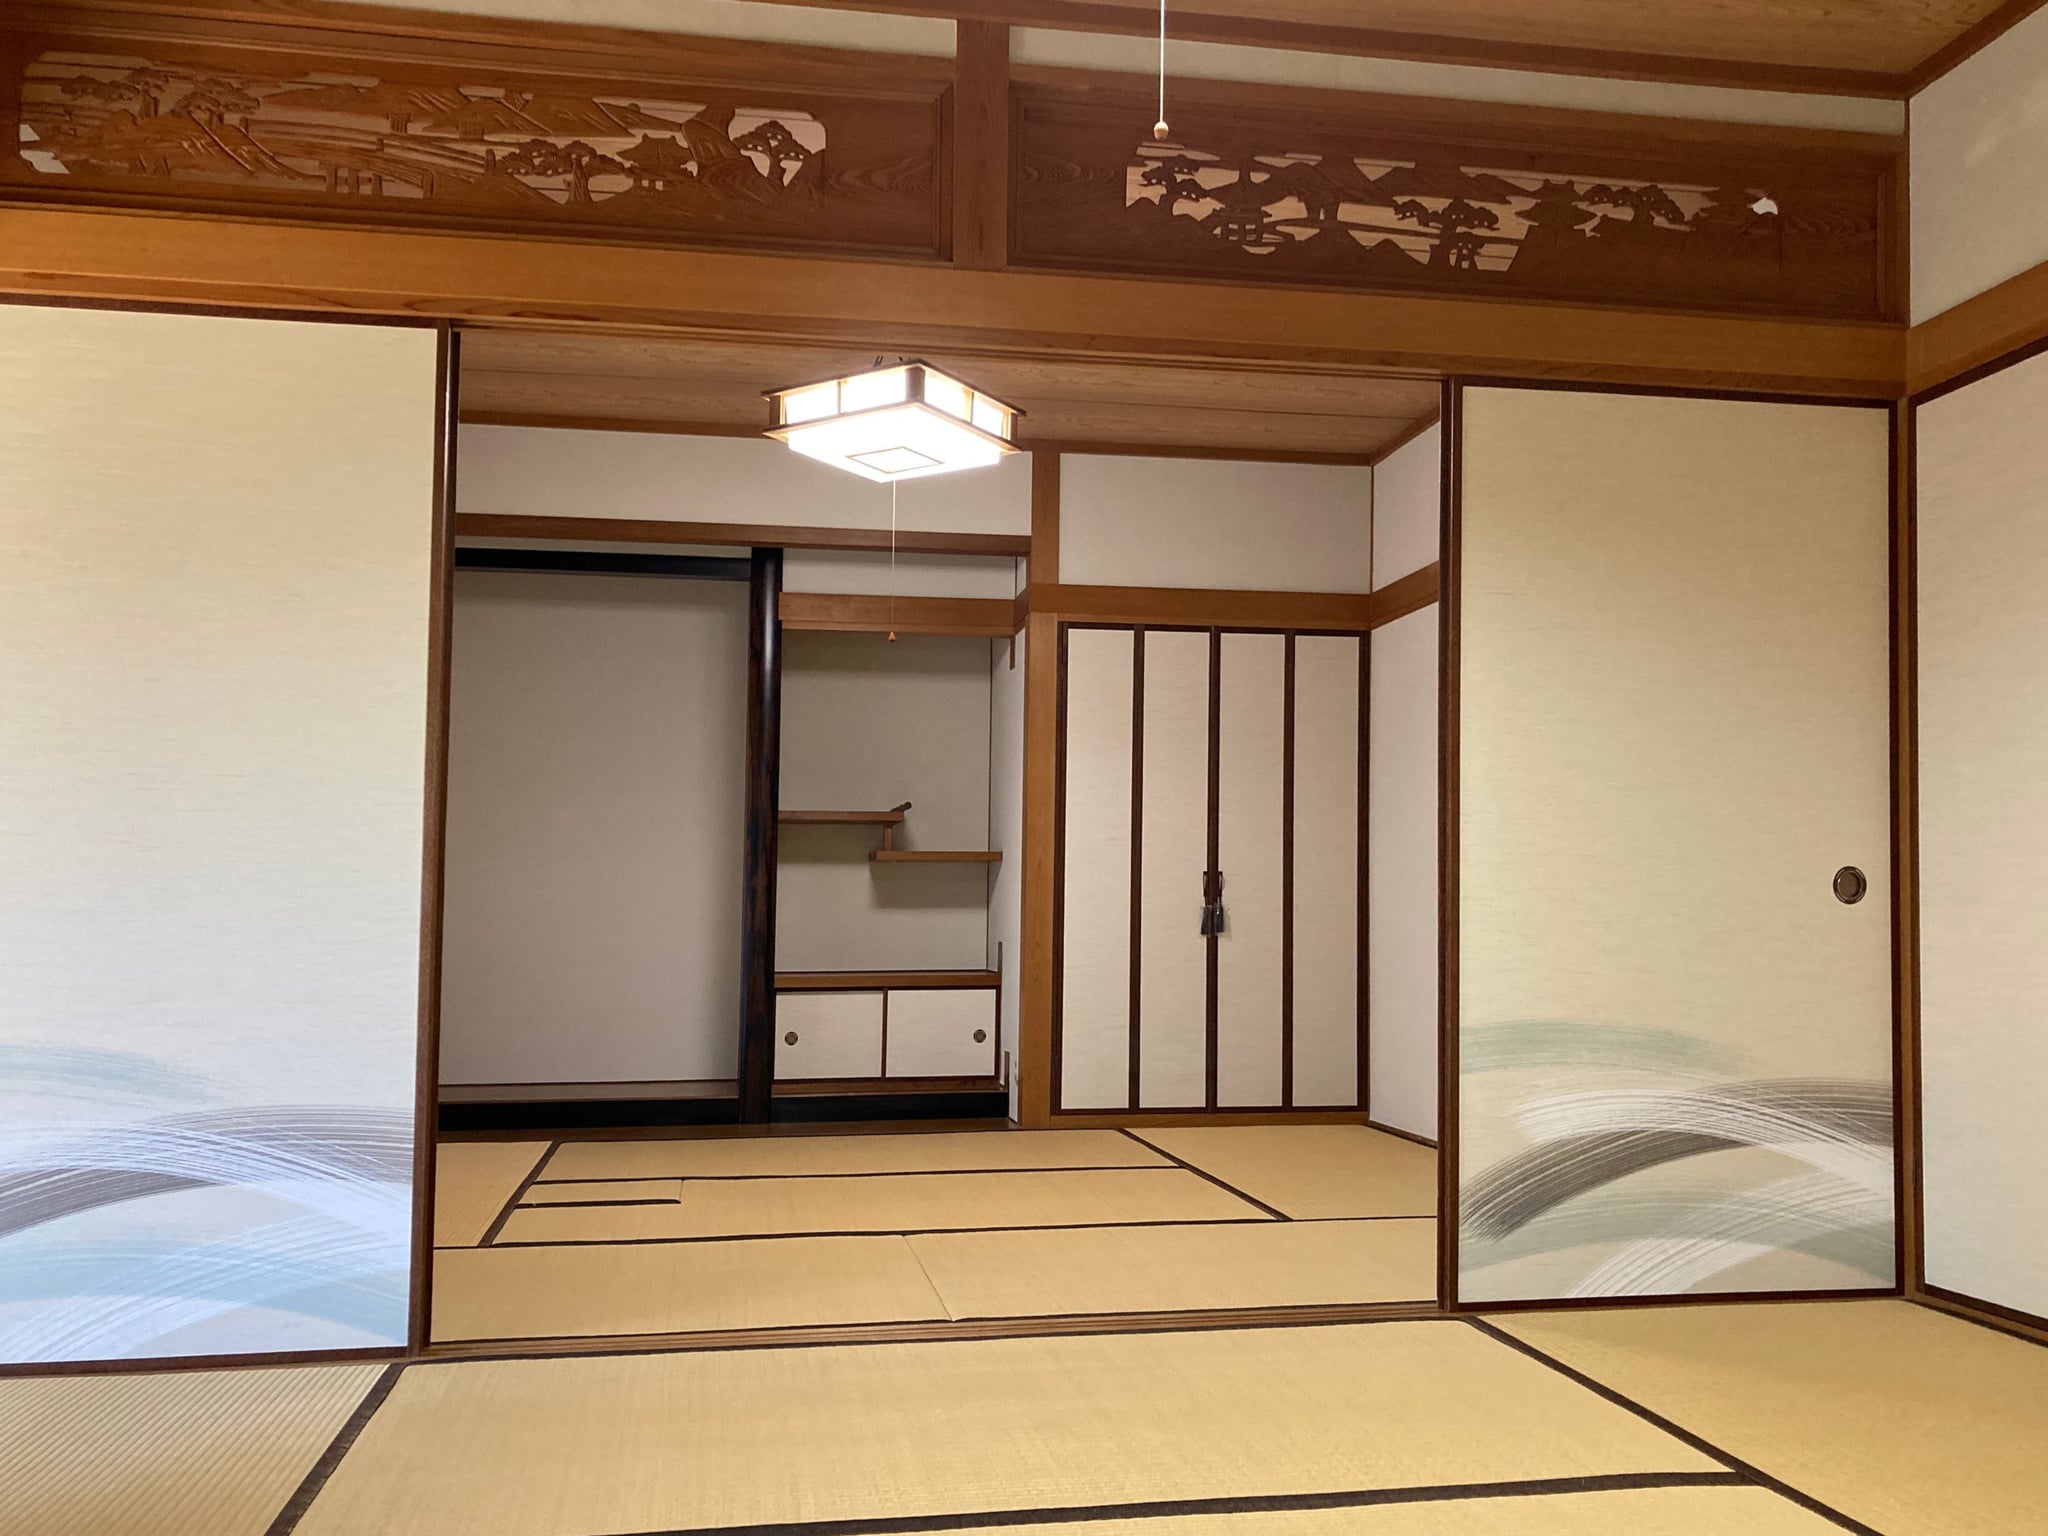 【室内塗装】こだわりの素材「薩摩中霧島壁」で澄んだ空気の和室に